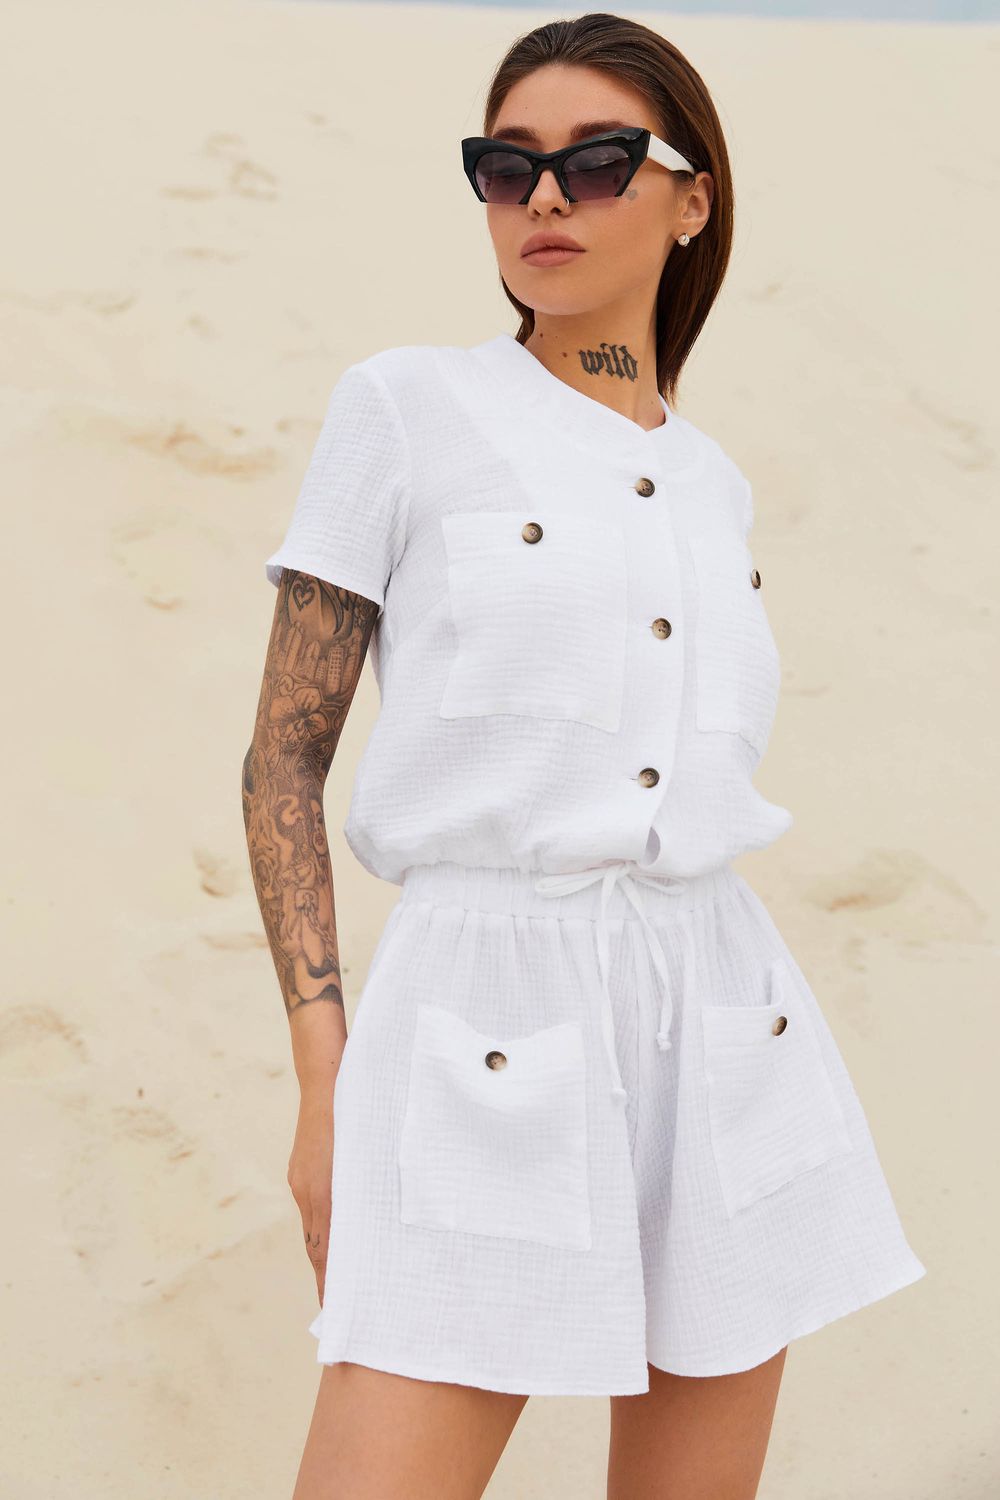 Жіночий літній костюм з шортами білий - фото